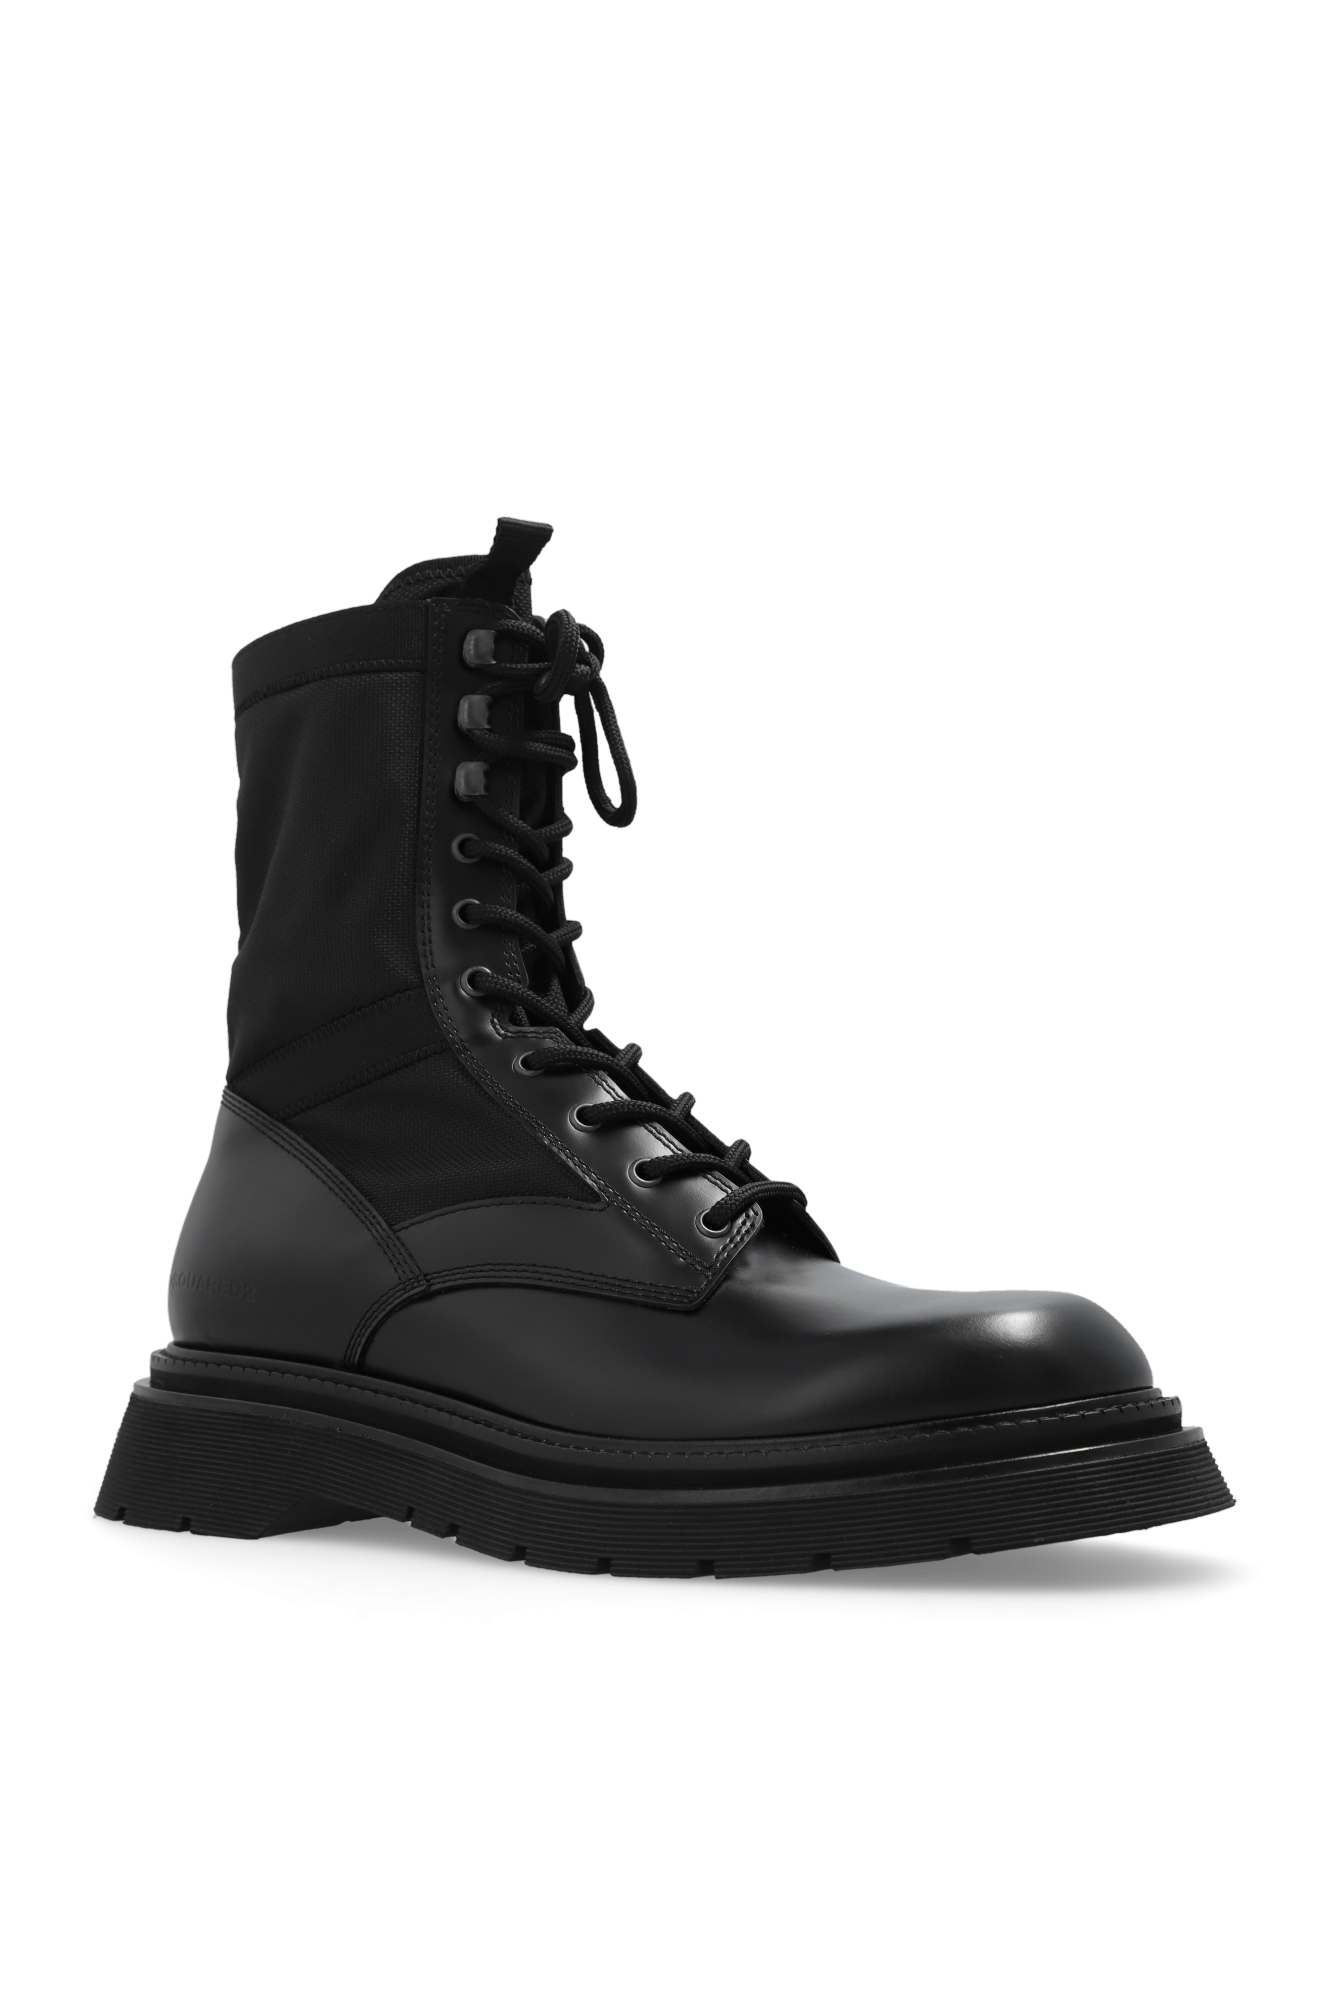 Dsquared2 ‘Combat’ boots | Men's Shoes | Vitkac